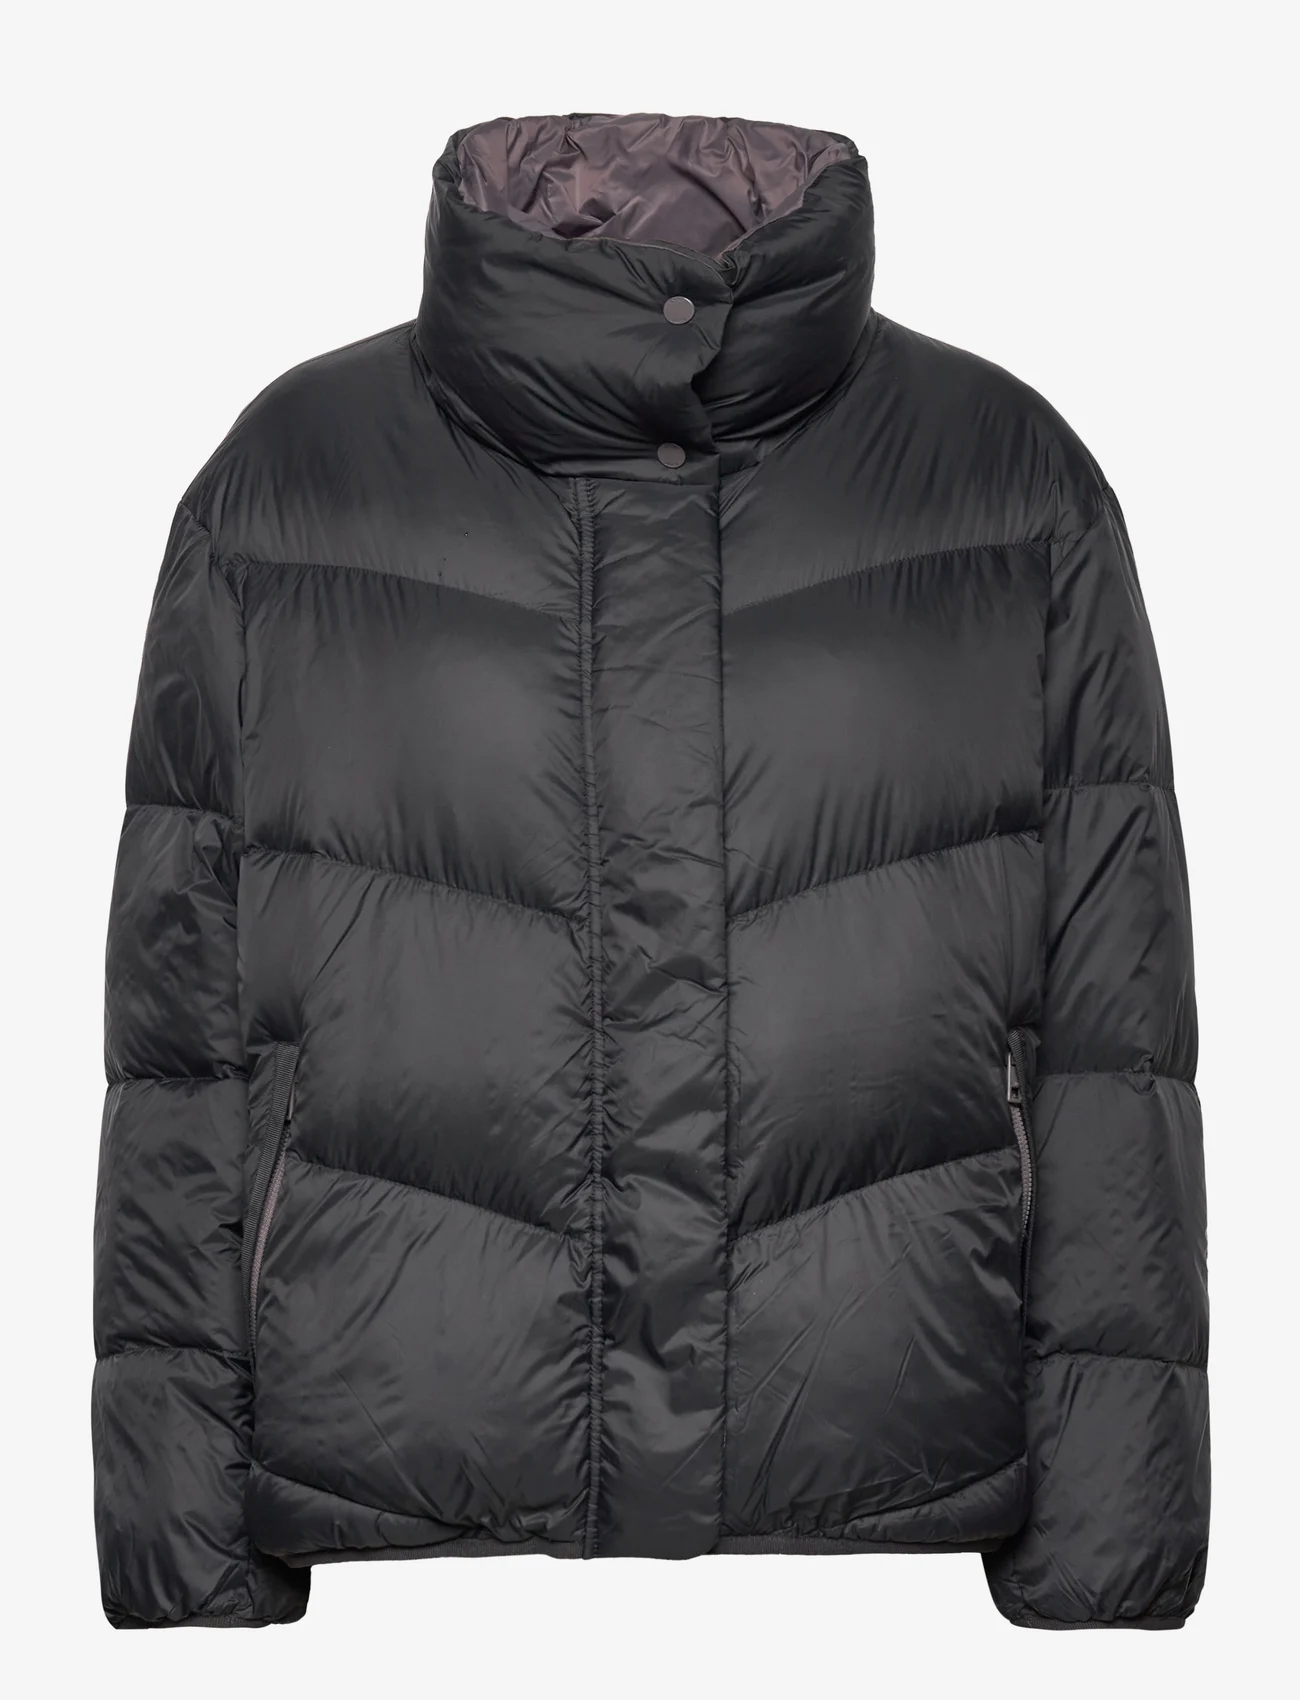 Esprit Casual Quilted Jacket With Down Filling - 1299 kr. Køb Forede jakker fra Esprit Casual online på Boozt.com. Hurtig & nem retur